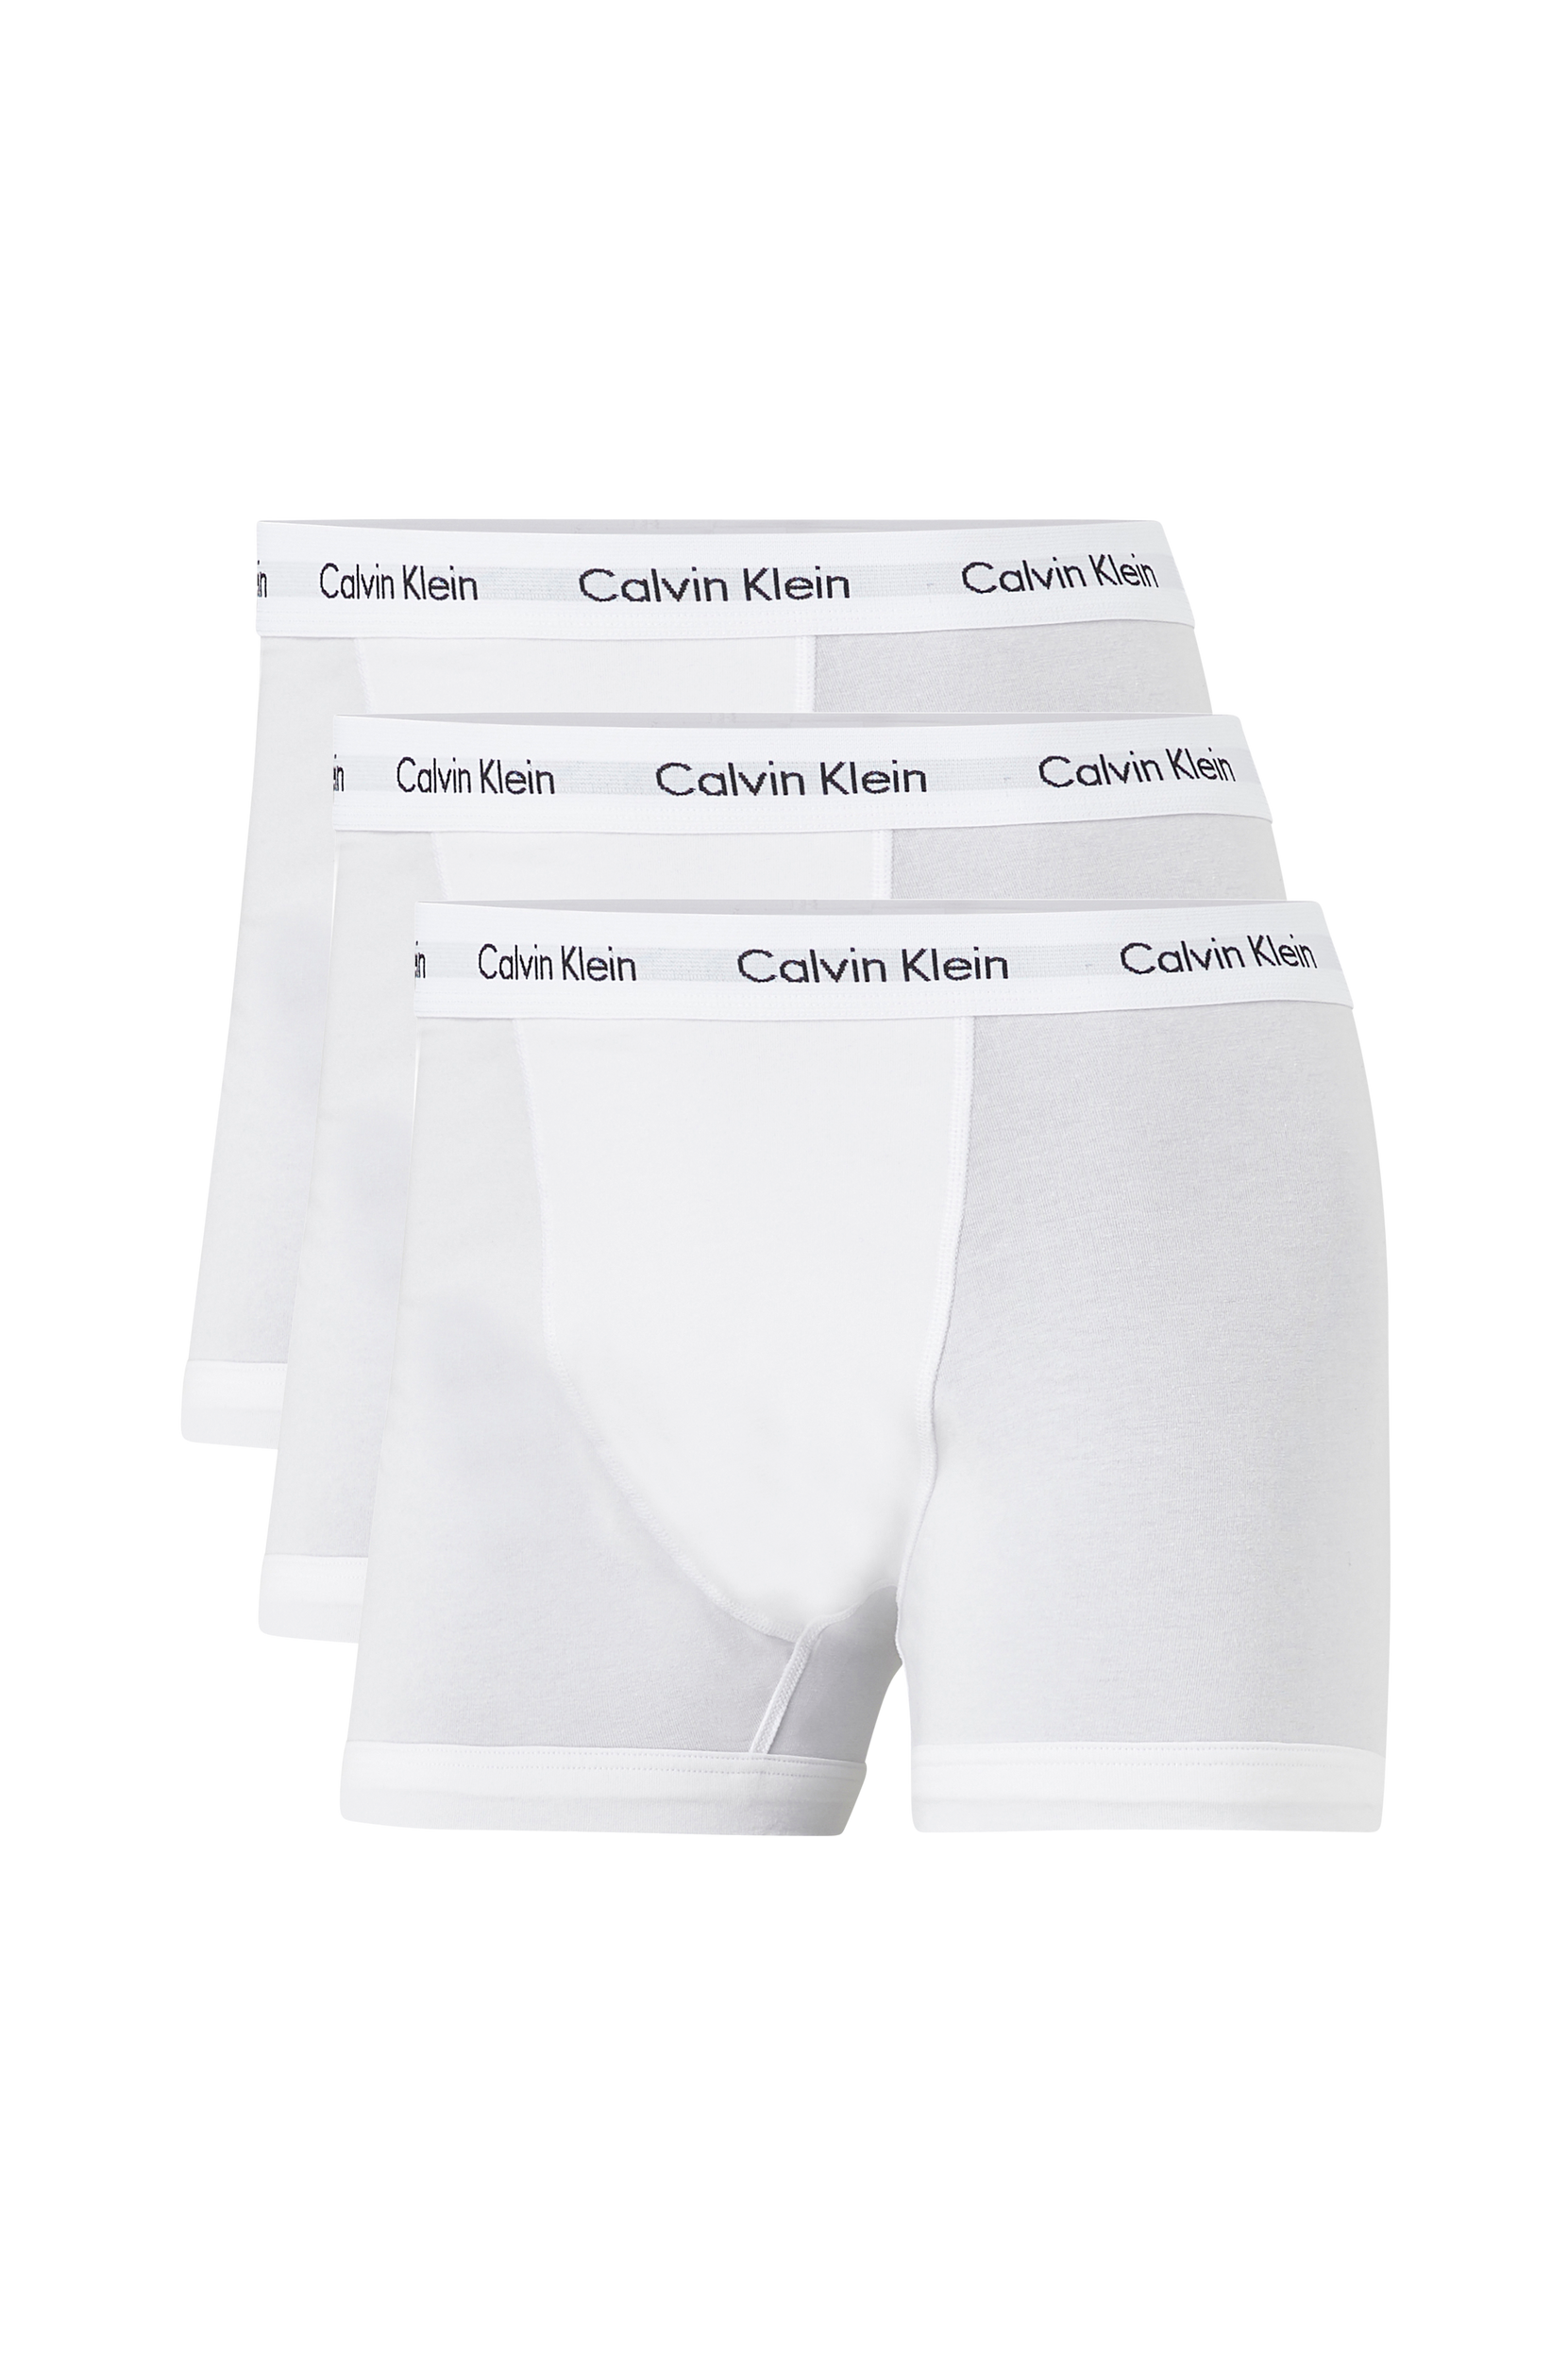 Alushousut Cotton Stretch Trunk, 3/pakk., Calvin Klein Underwear